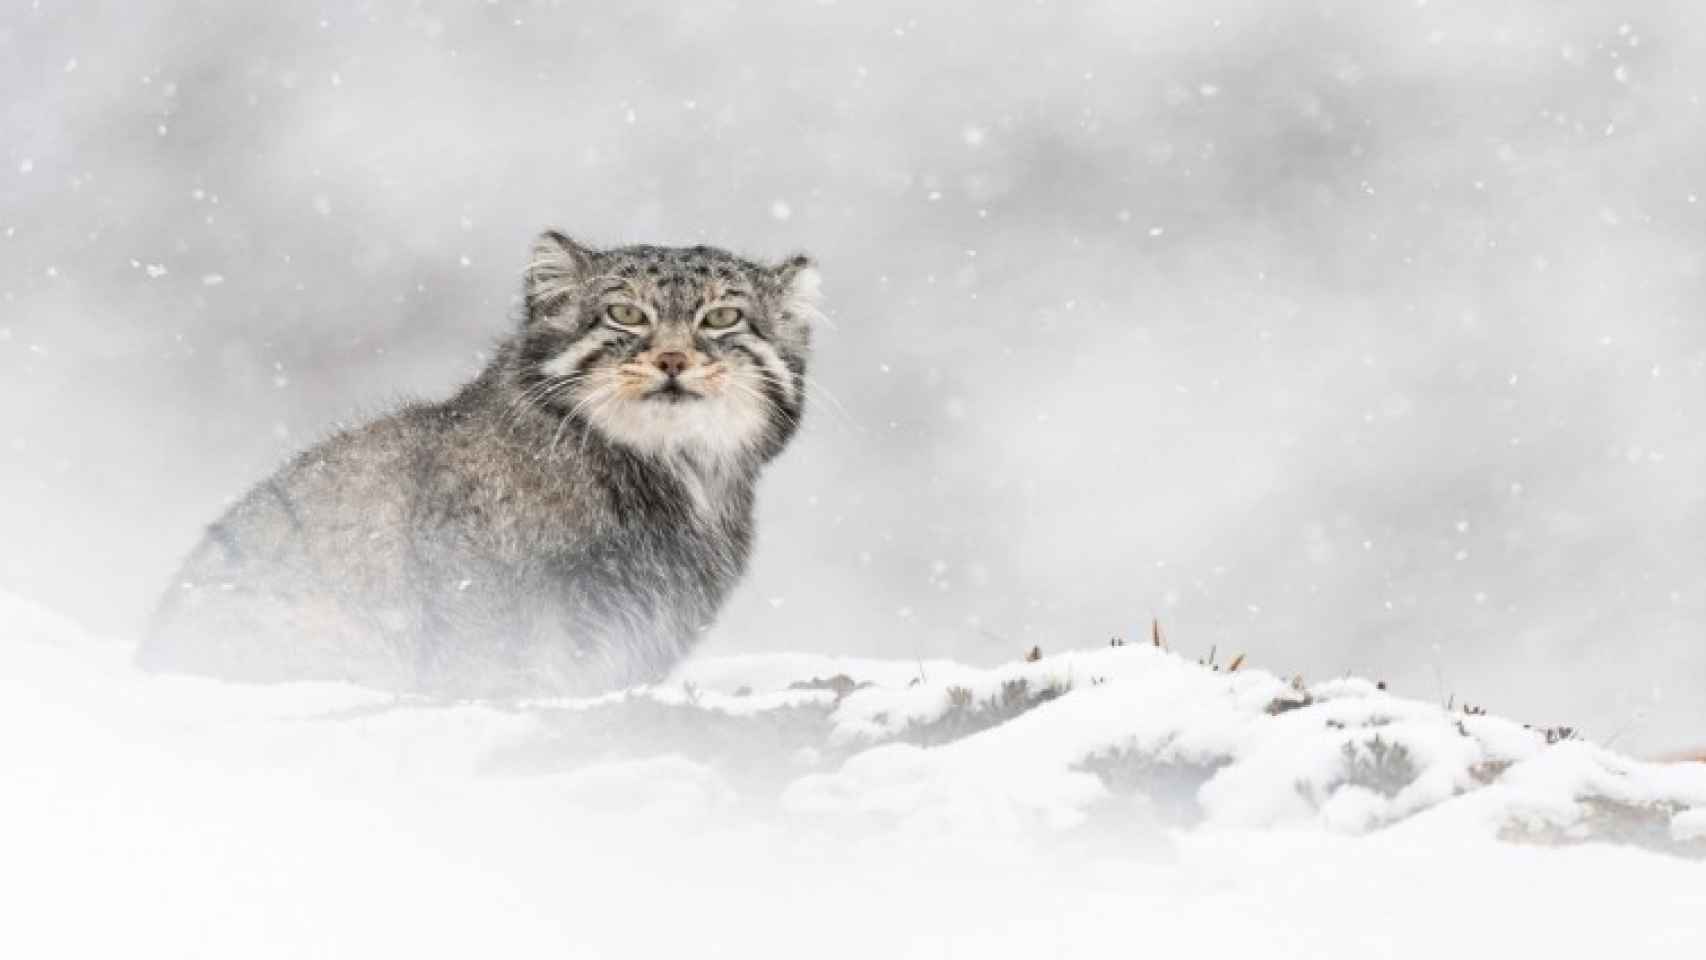 Una de las espectaculares imágenes del documental 'El leopardo de las nieves'